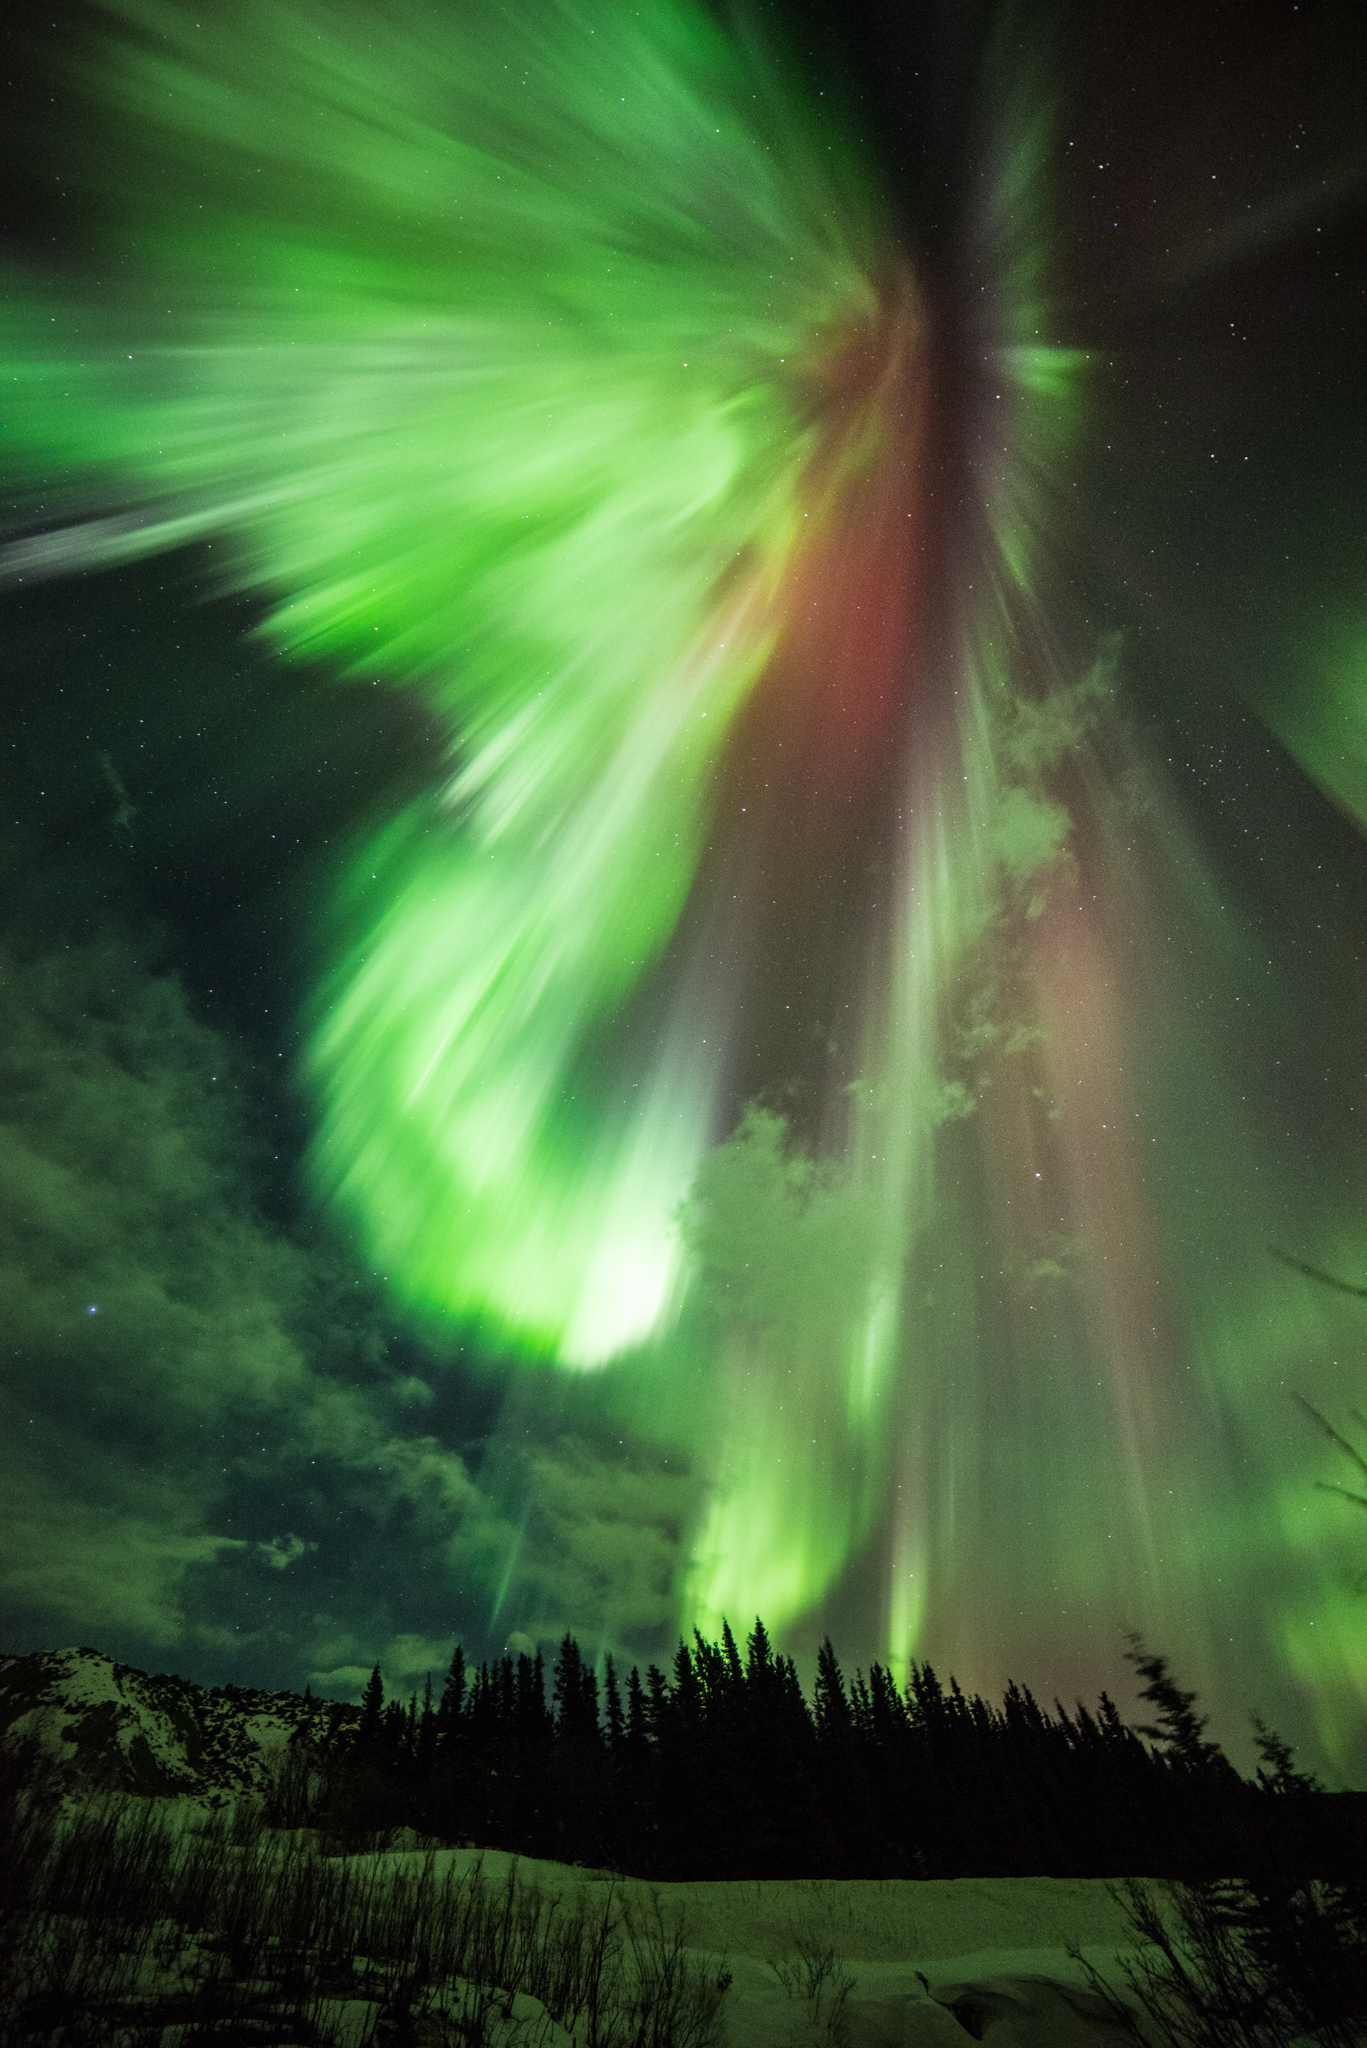 St. Patrick’s Aurora Illuminates the Night Sky